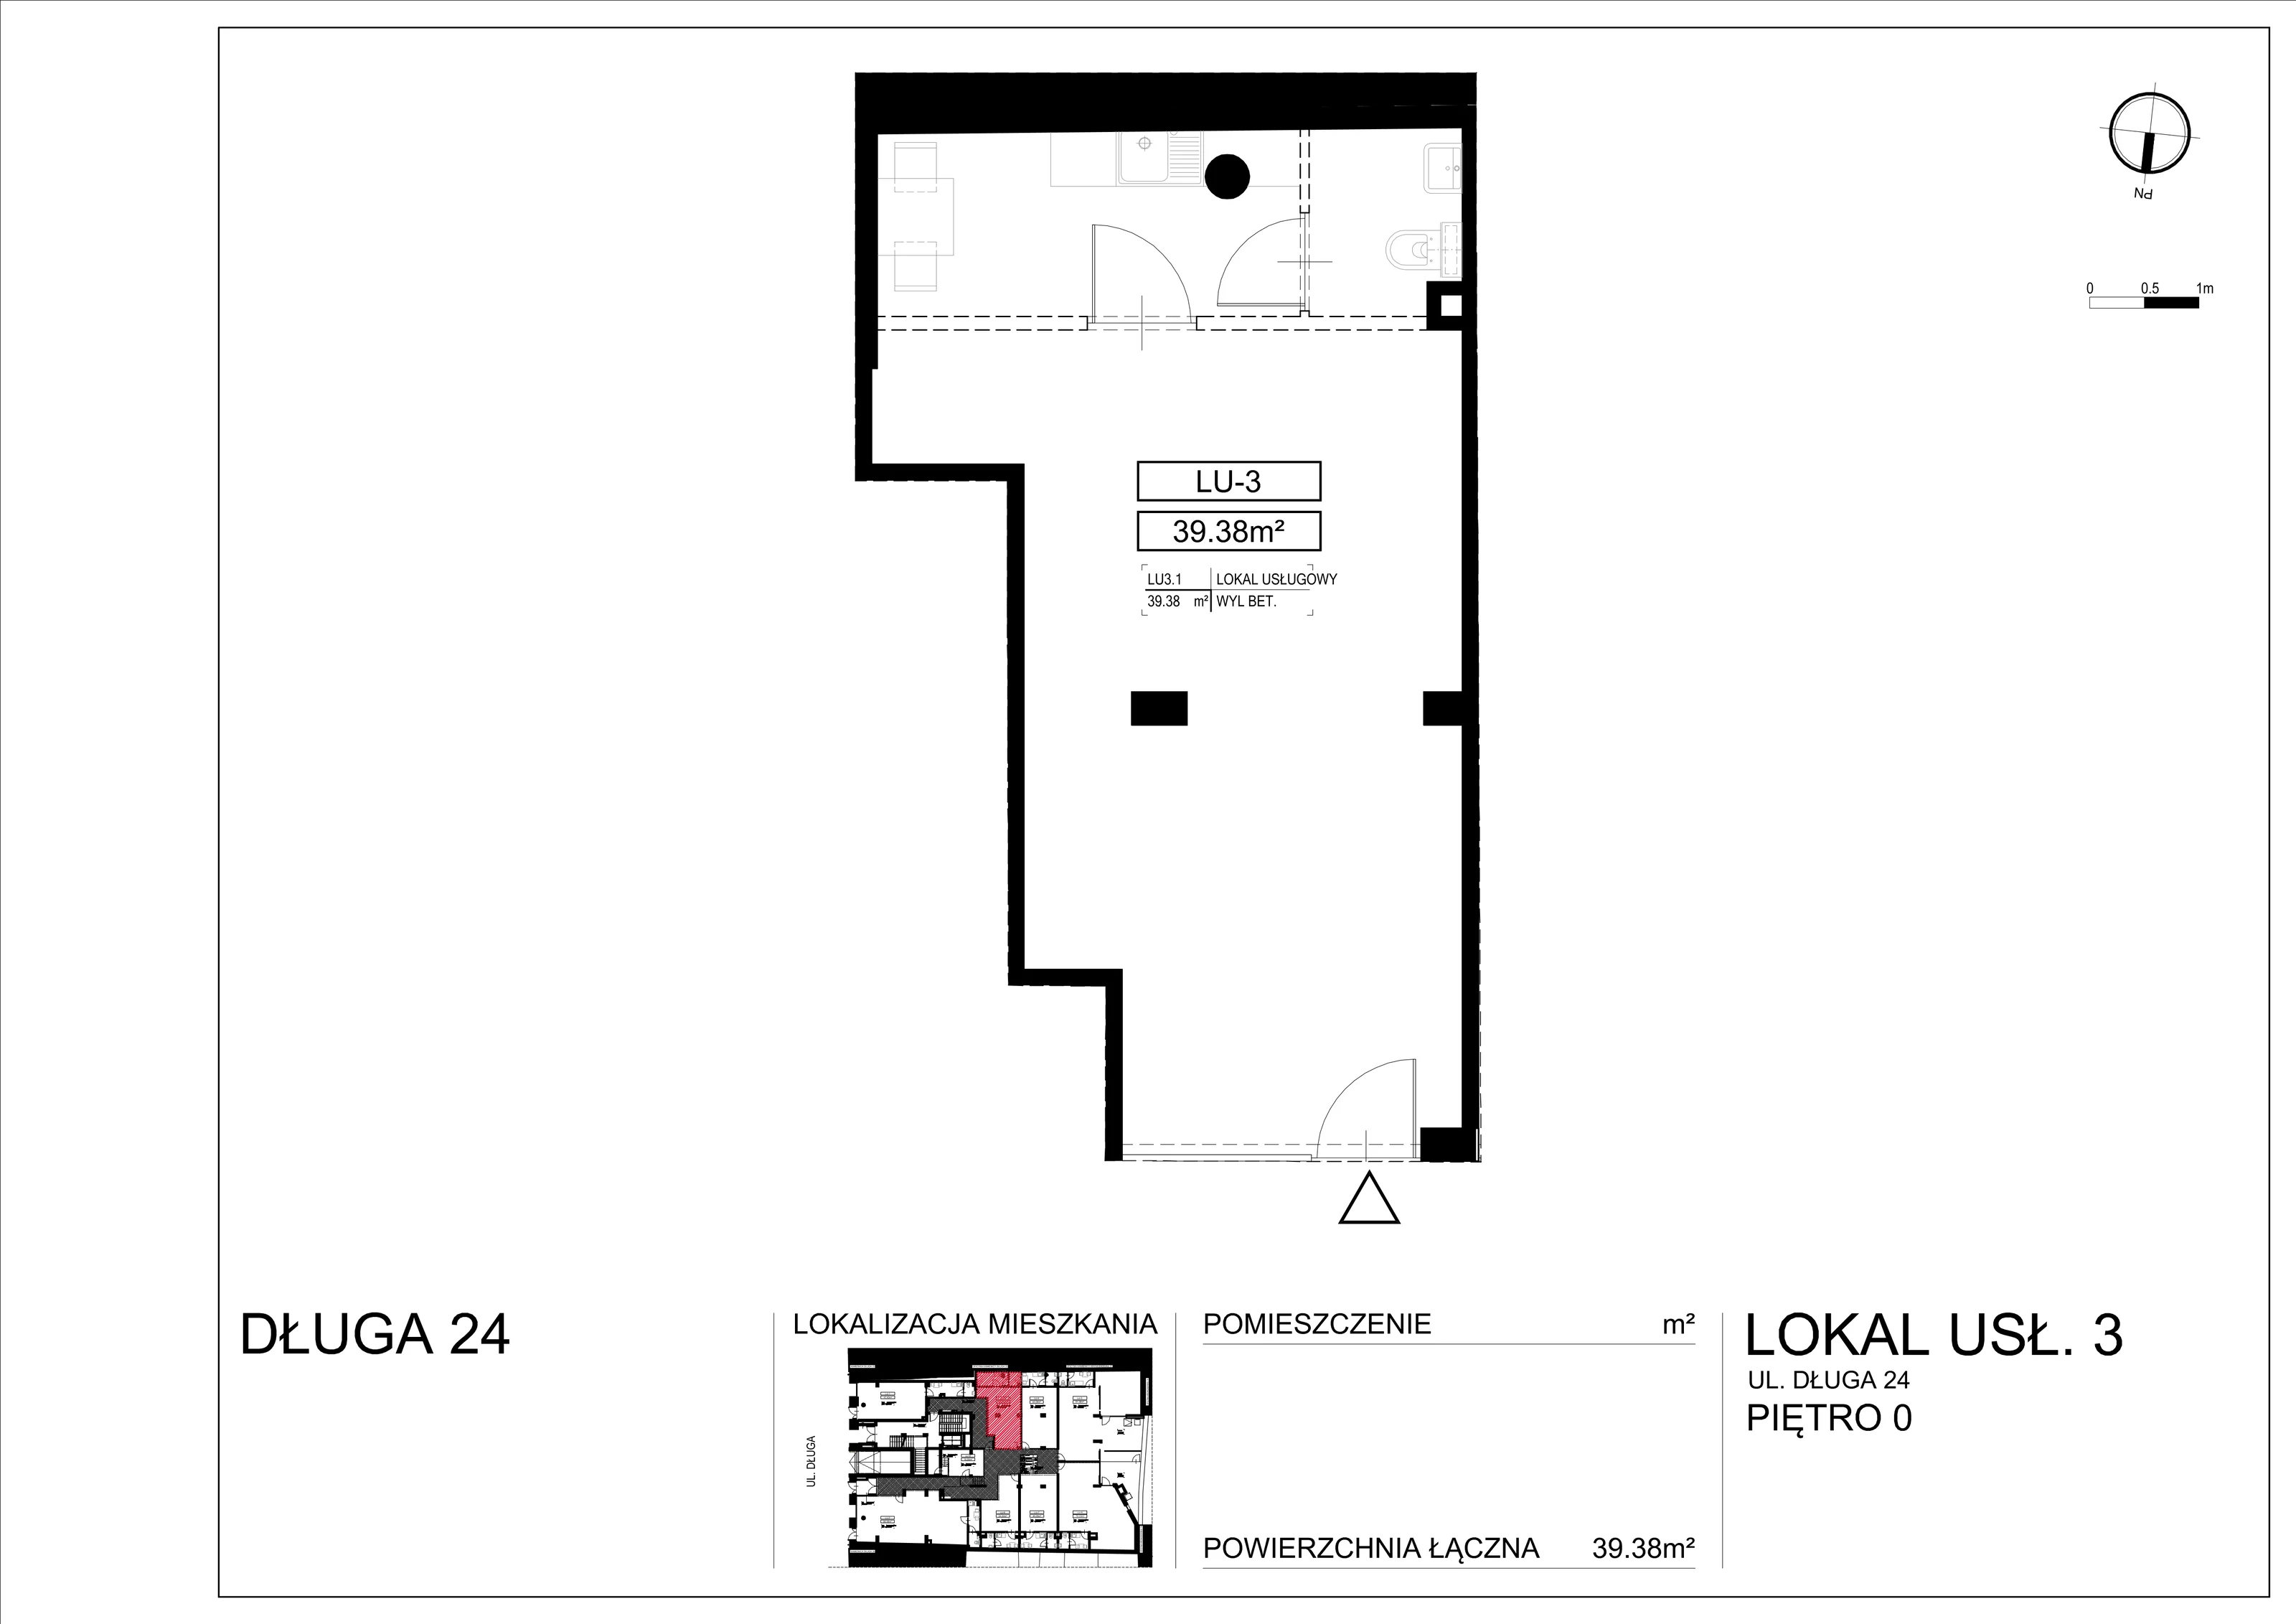 Lokal użytkowy 39,38 m², oferta nr L-3, Długa Residence - lokale użytkowe, Kraków, Stare Miasto, Kleparz, ul. Długa 24